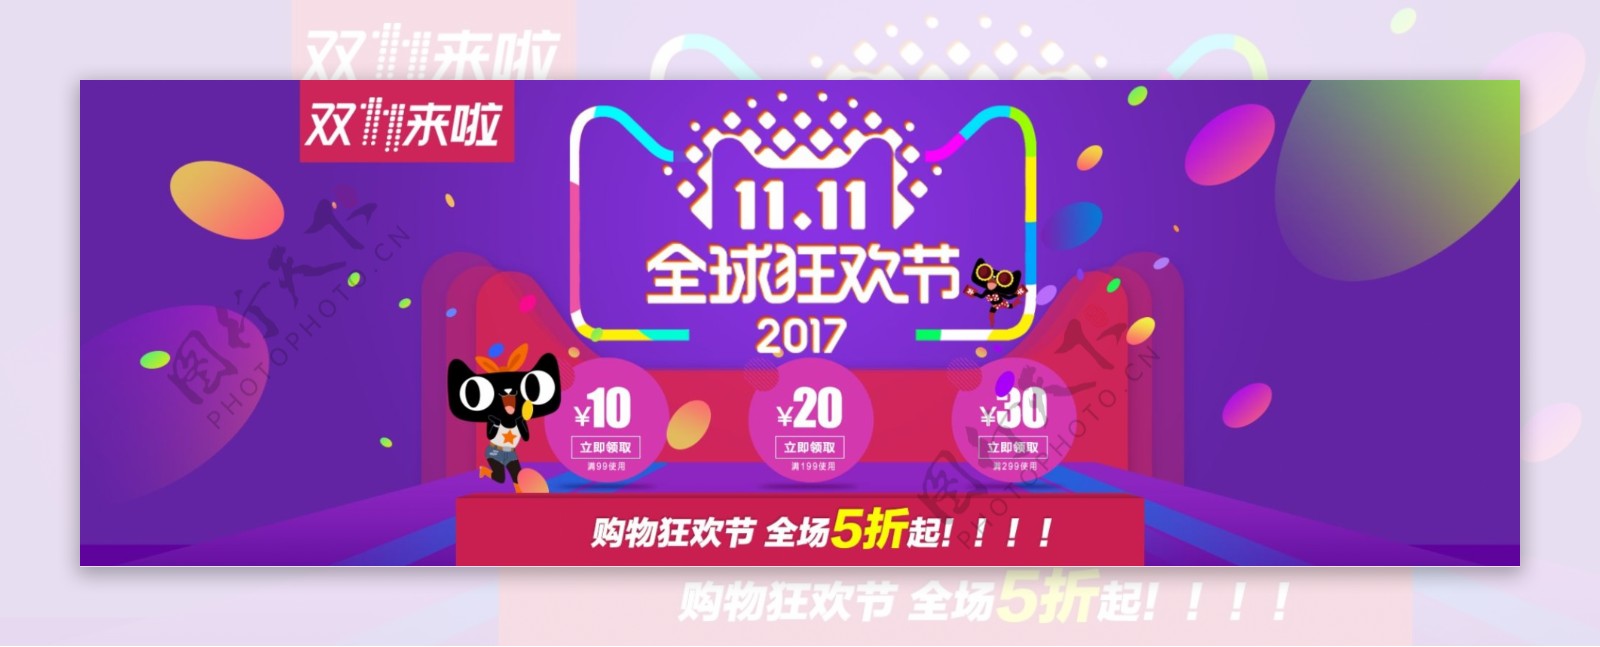 炫彩时尚双11购物狂欢节电商海报banner淘宝双十一